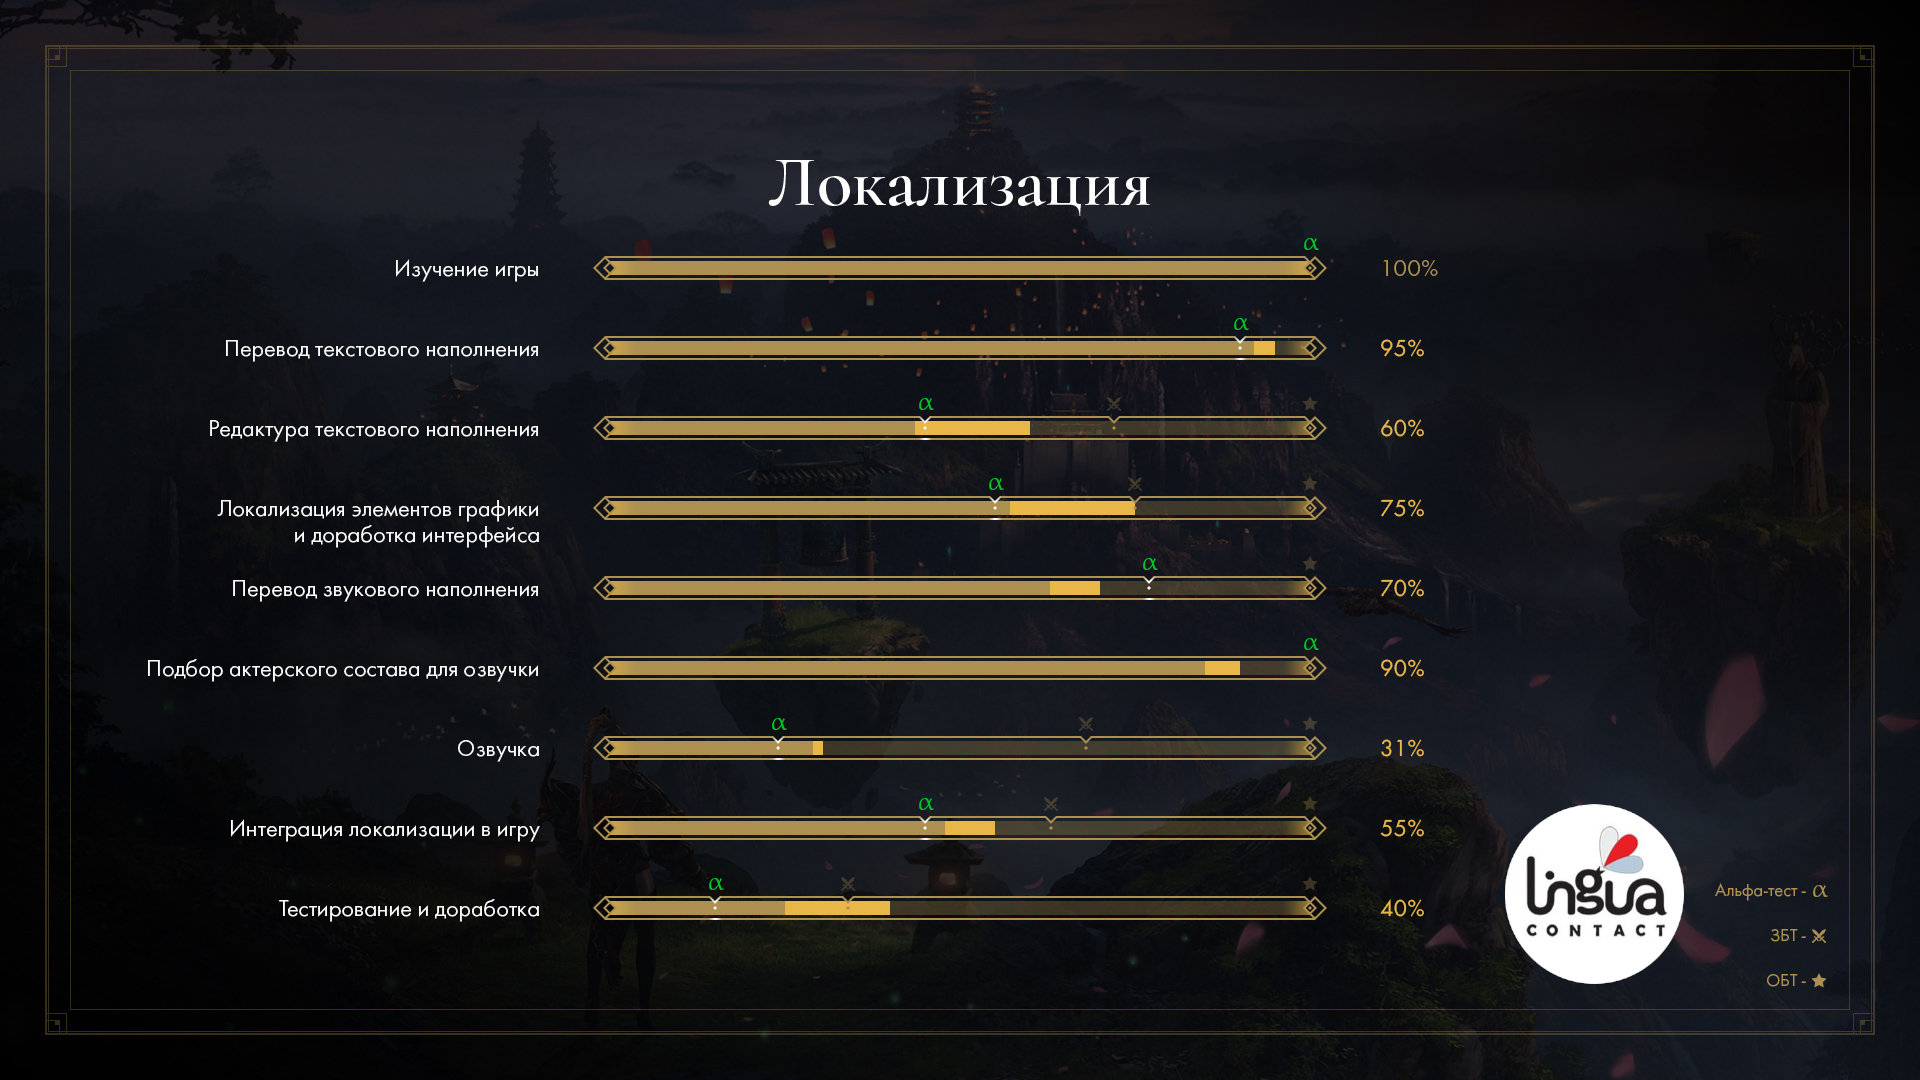 Как переводятся игры на русский